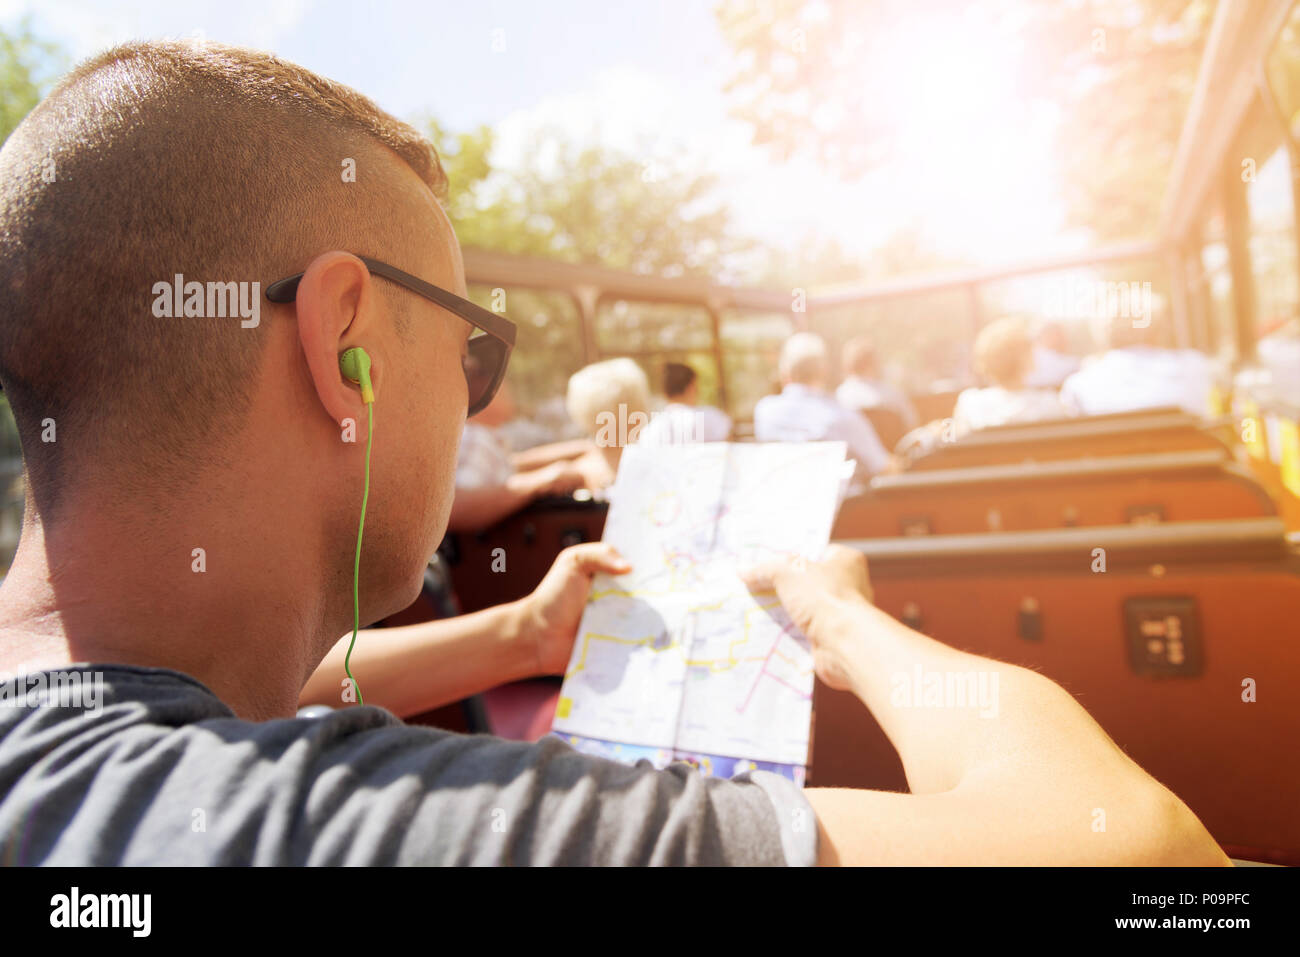 Nahaufnahme eines jungen cacausian Mann Reisen auf einem oben offenen tour bus, einen Stadtplan und das Tragen von Kopfhörern, mit einem Sonnenstrahl im Hintergrund Stockfoto